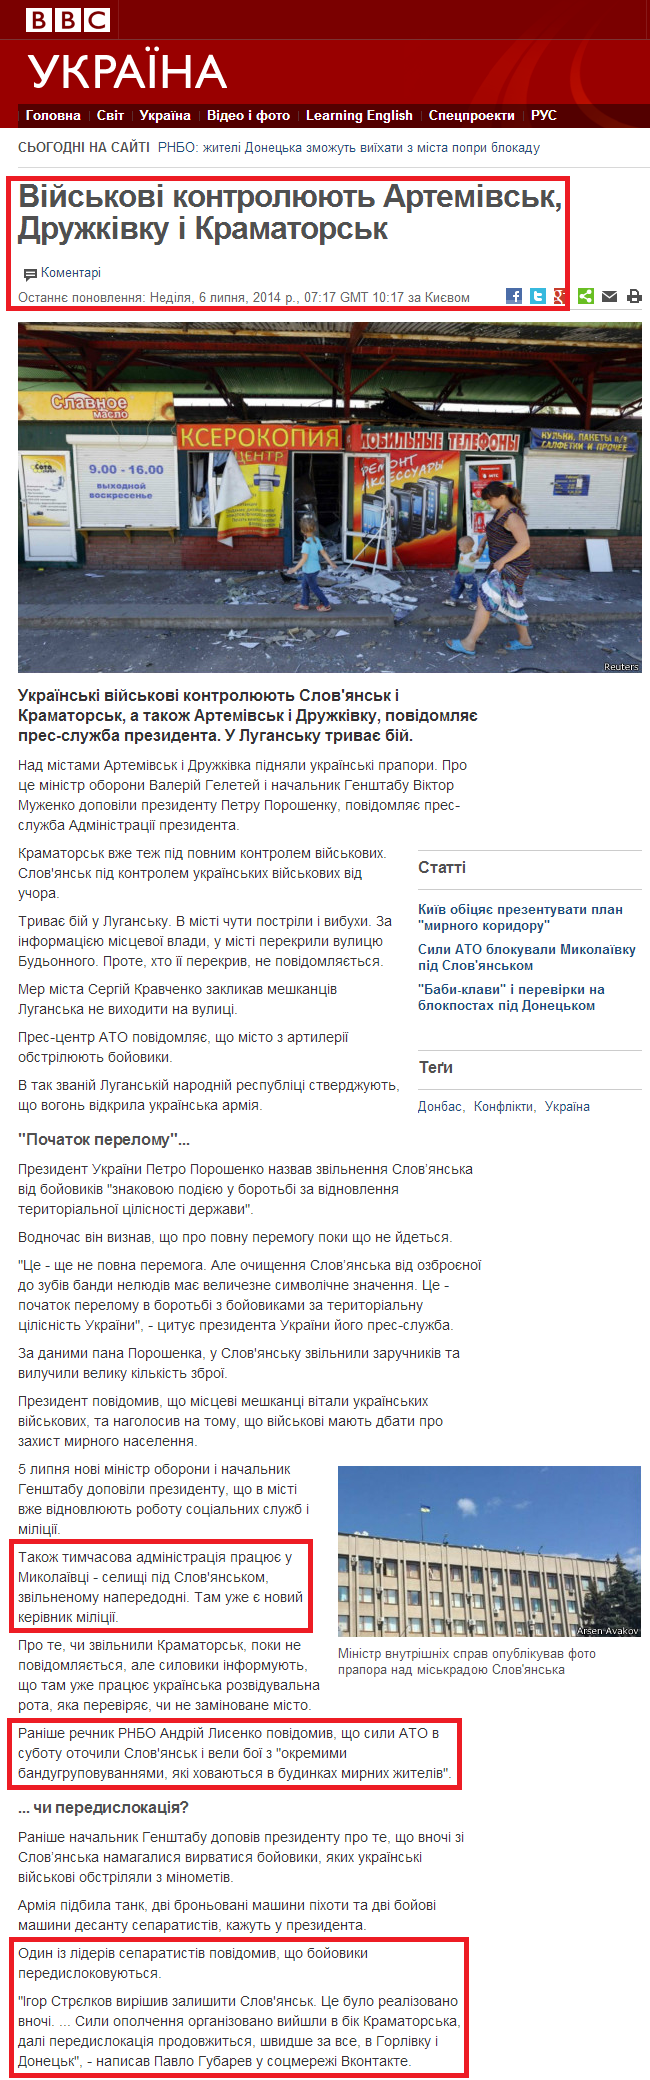 http://www.bbc.co.uk/ukrainian/politics/2014/07/140706_poroshenko_turning_point_dt.shtml